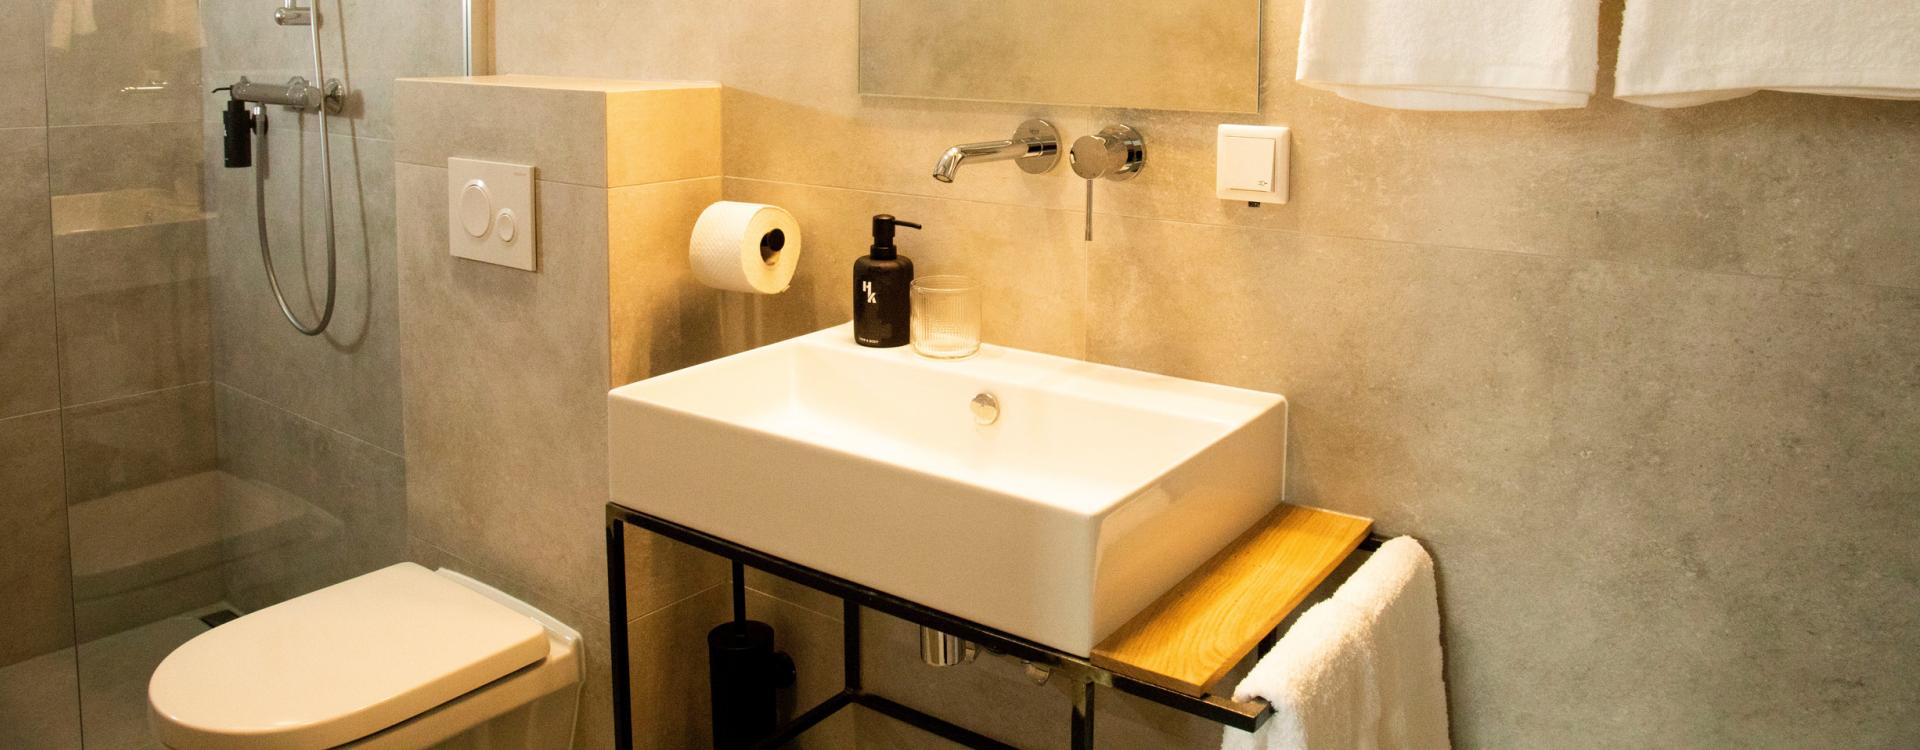 Een moderne badkamer met grote grijze tegels, een ruime douche, een vierkante wasbak, een toilet en witte handdoeken